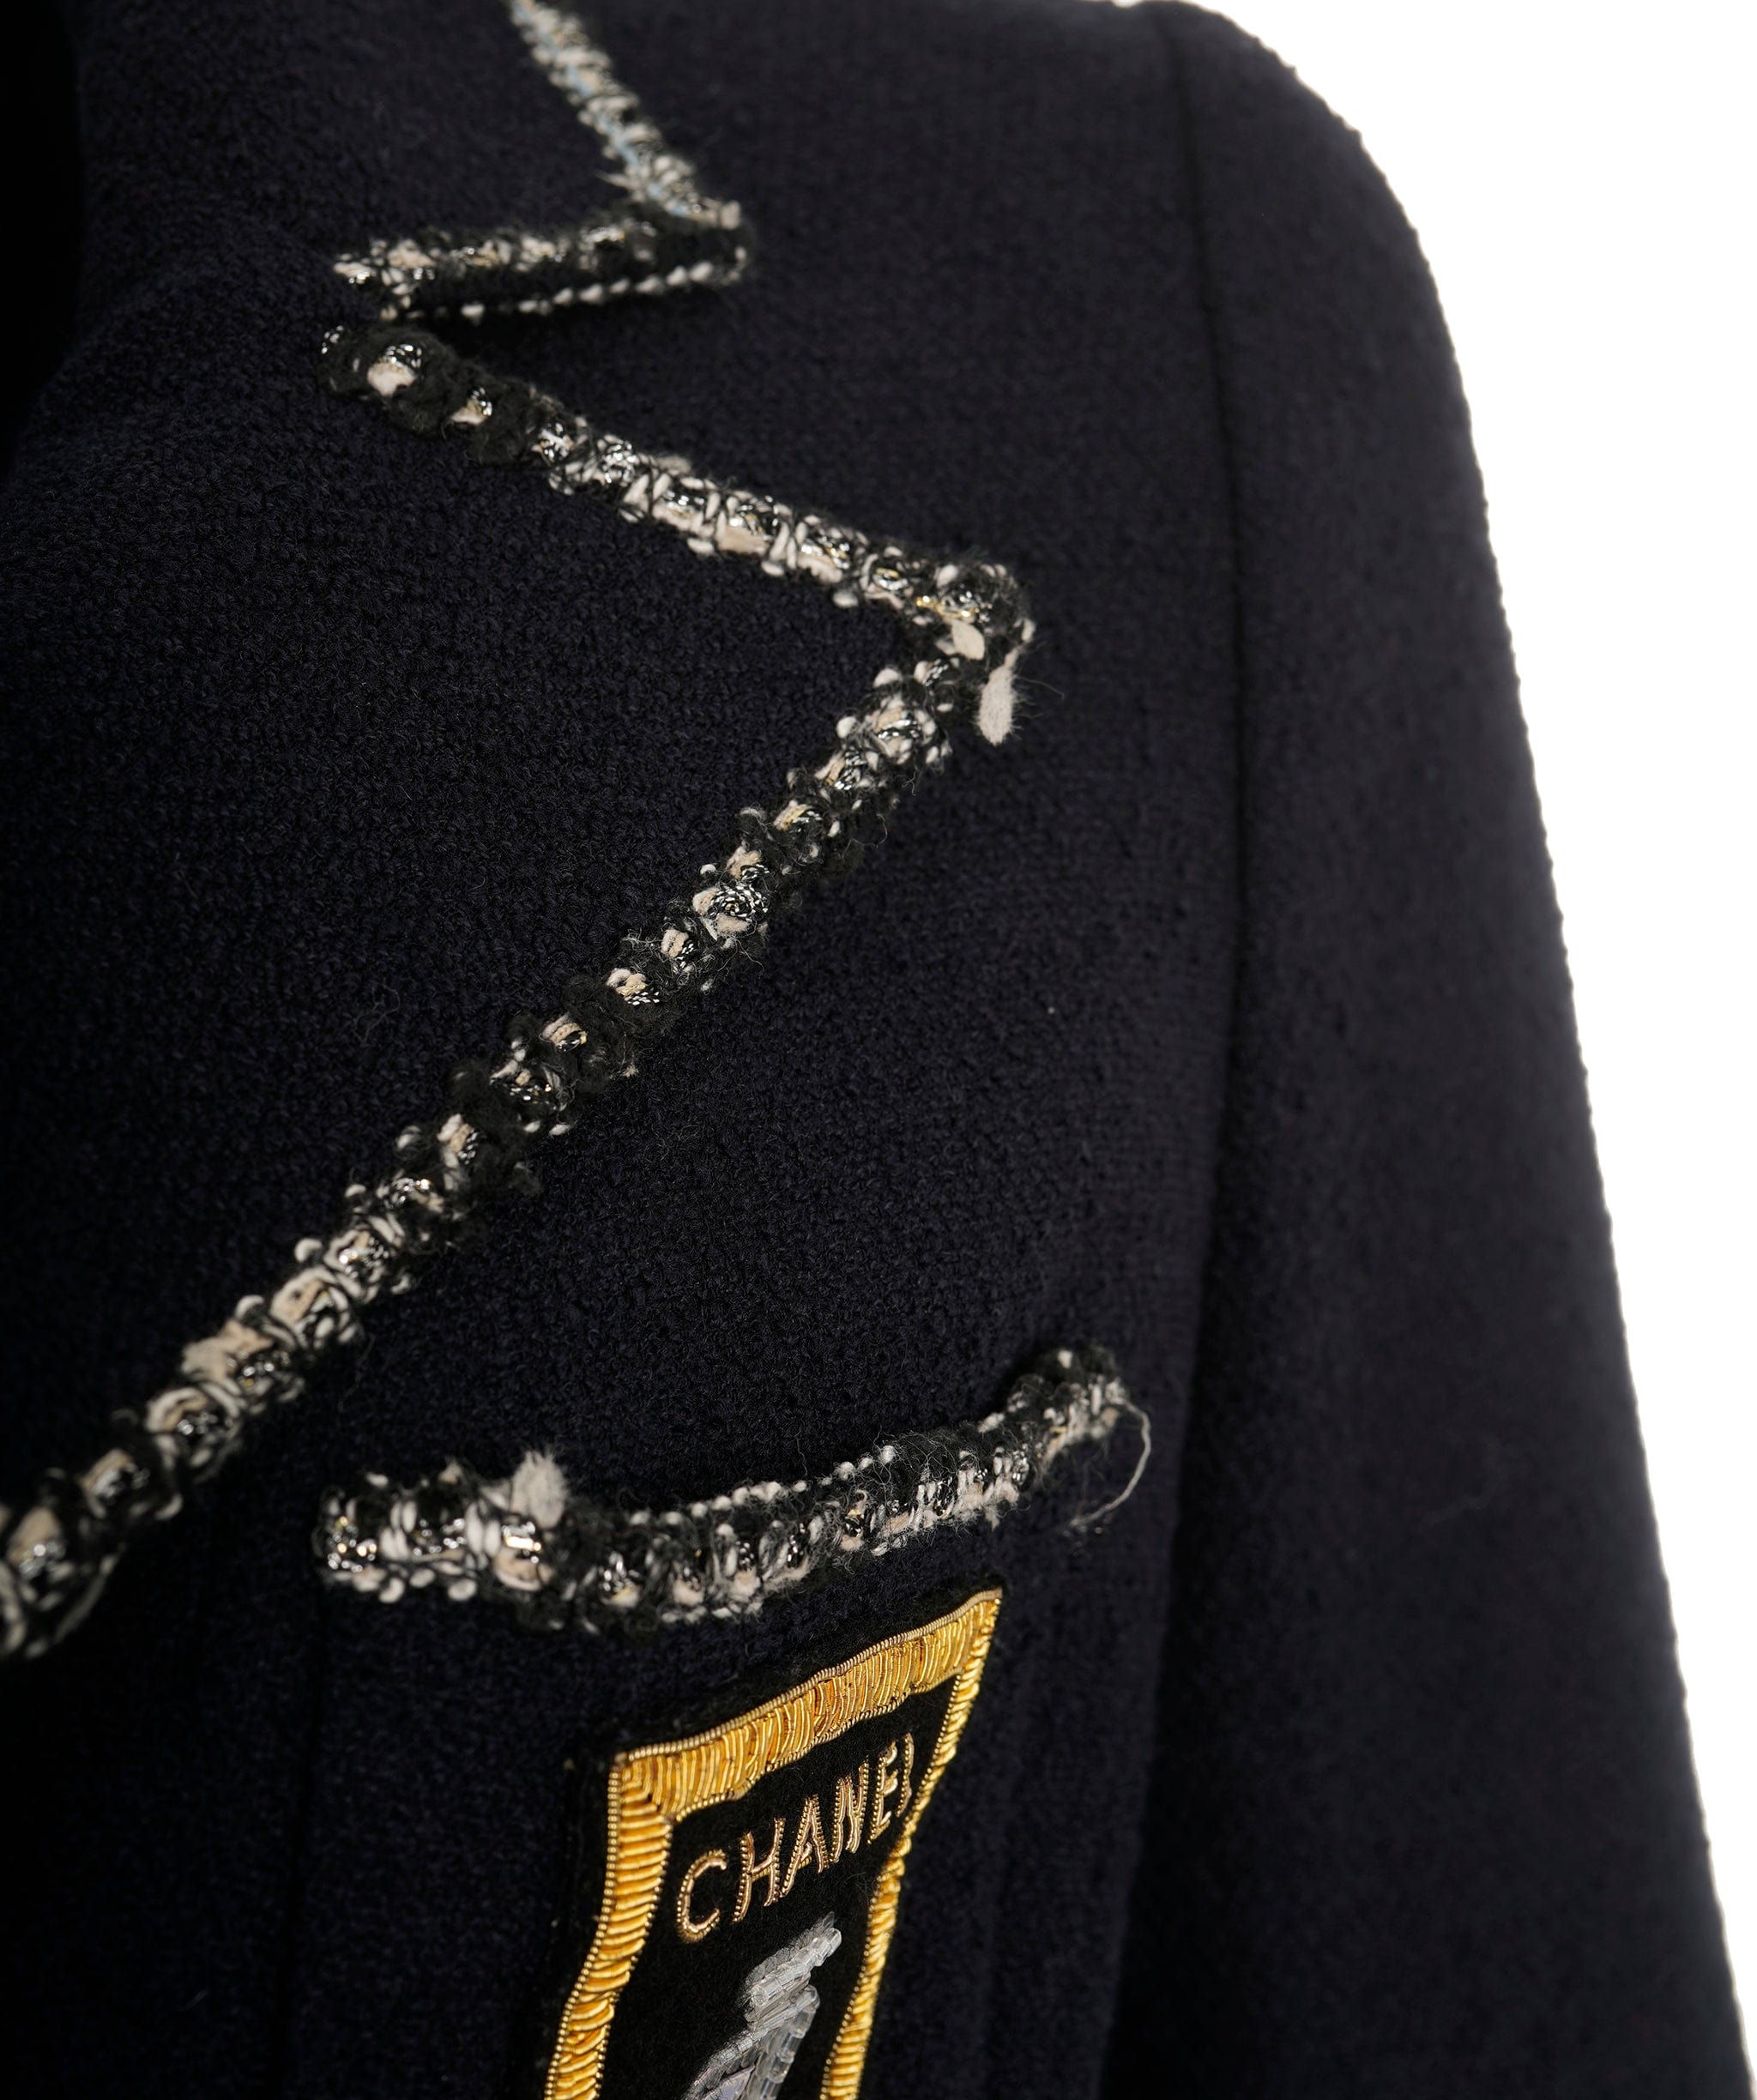 Chanel Chanel "Devil Wears Prada" navy jacket AVC1819